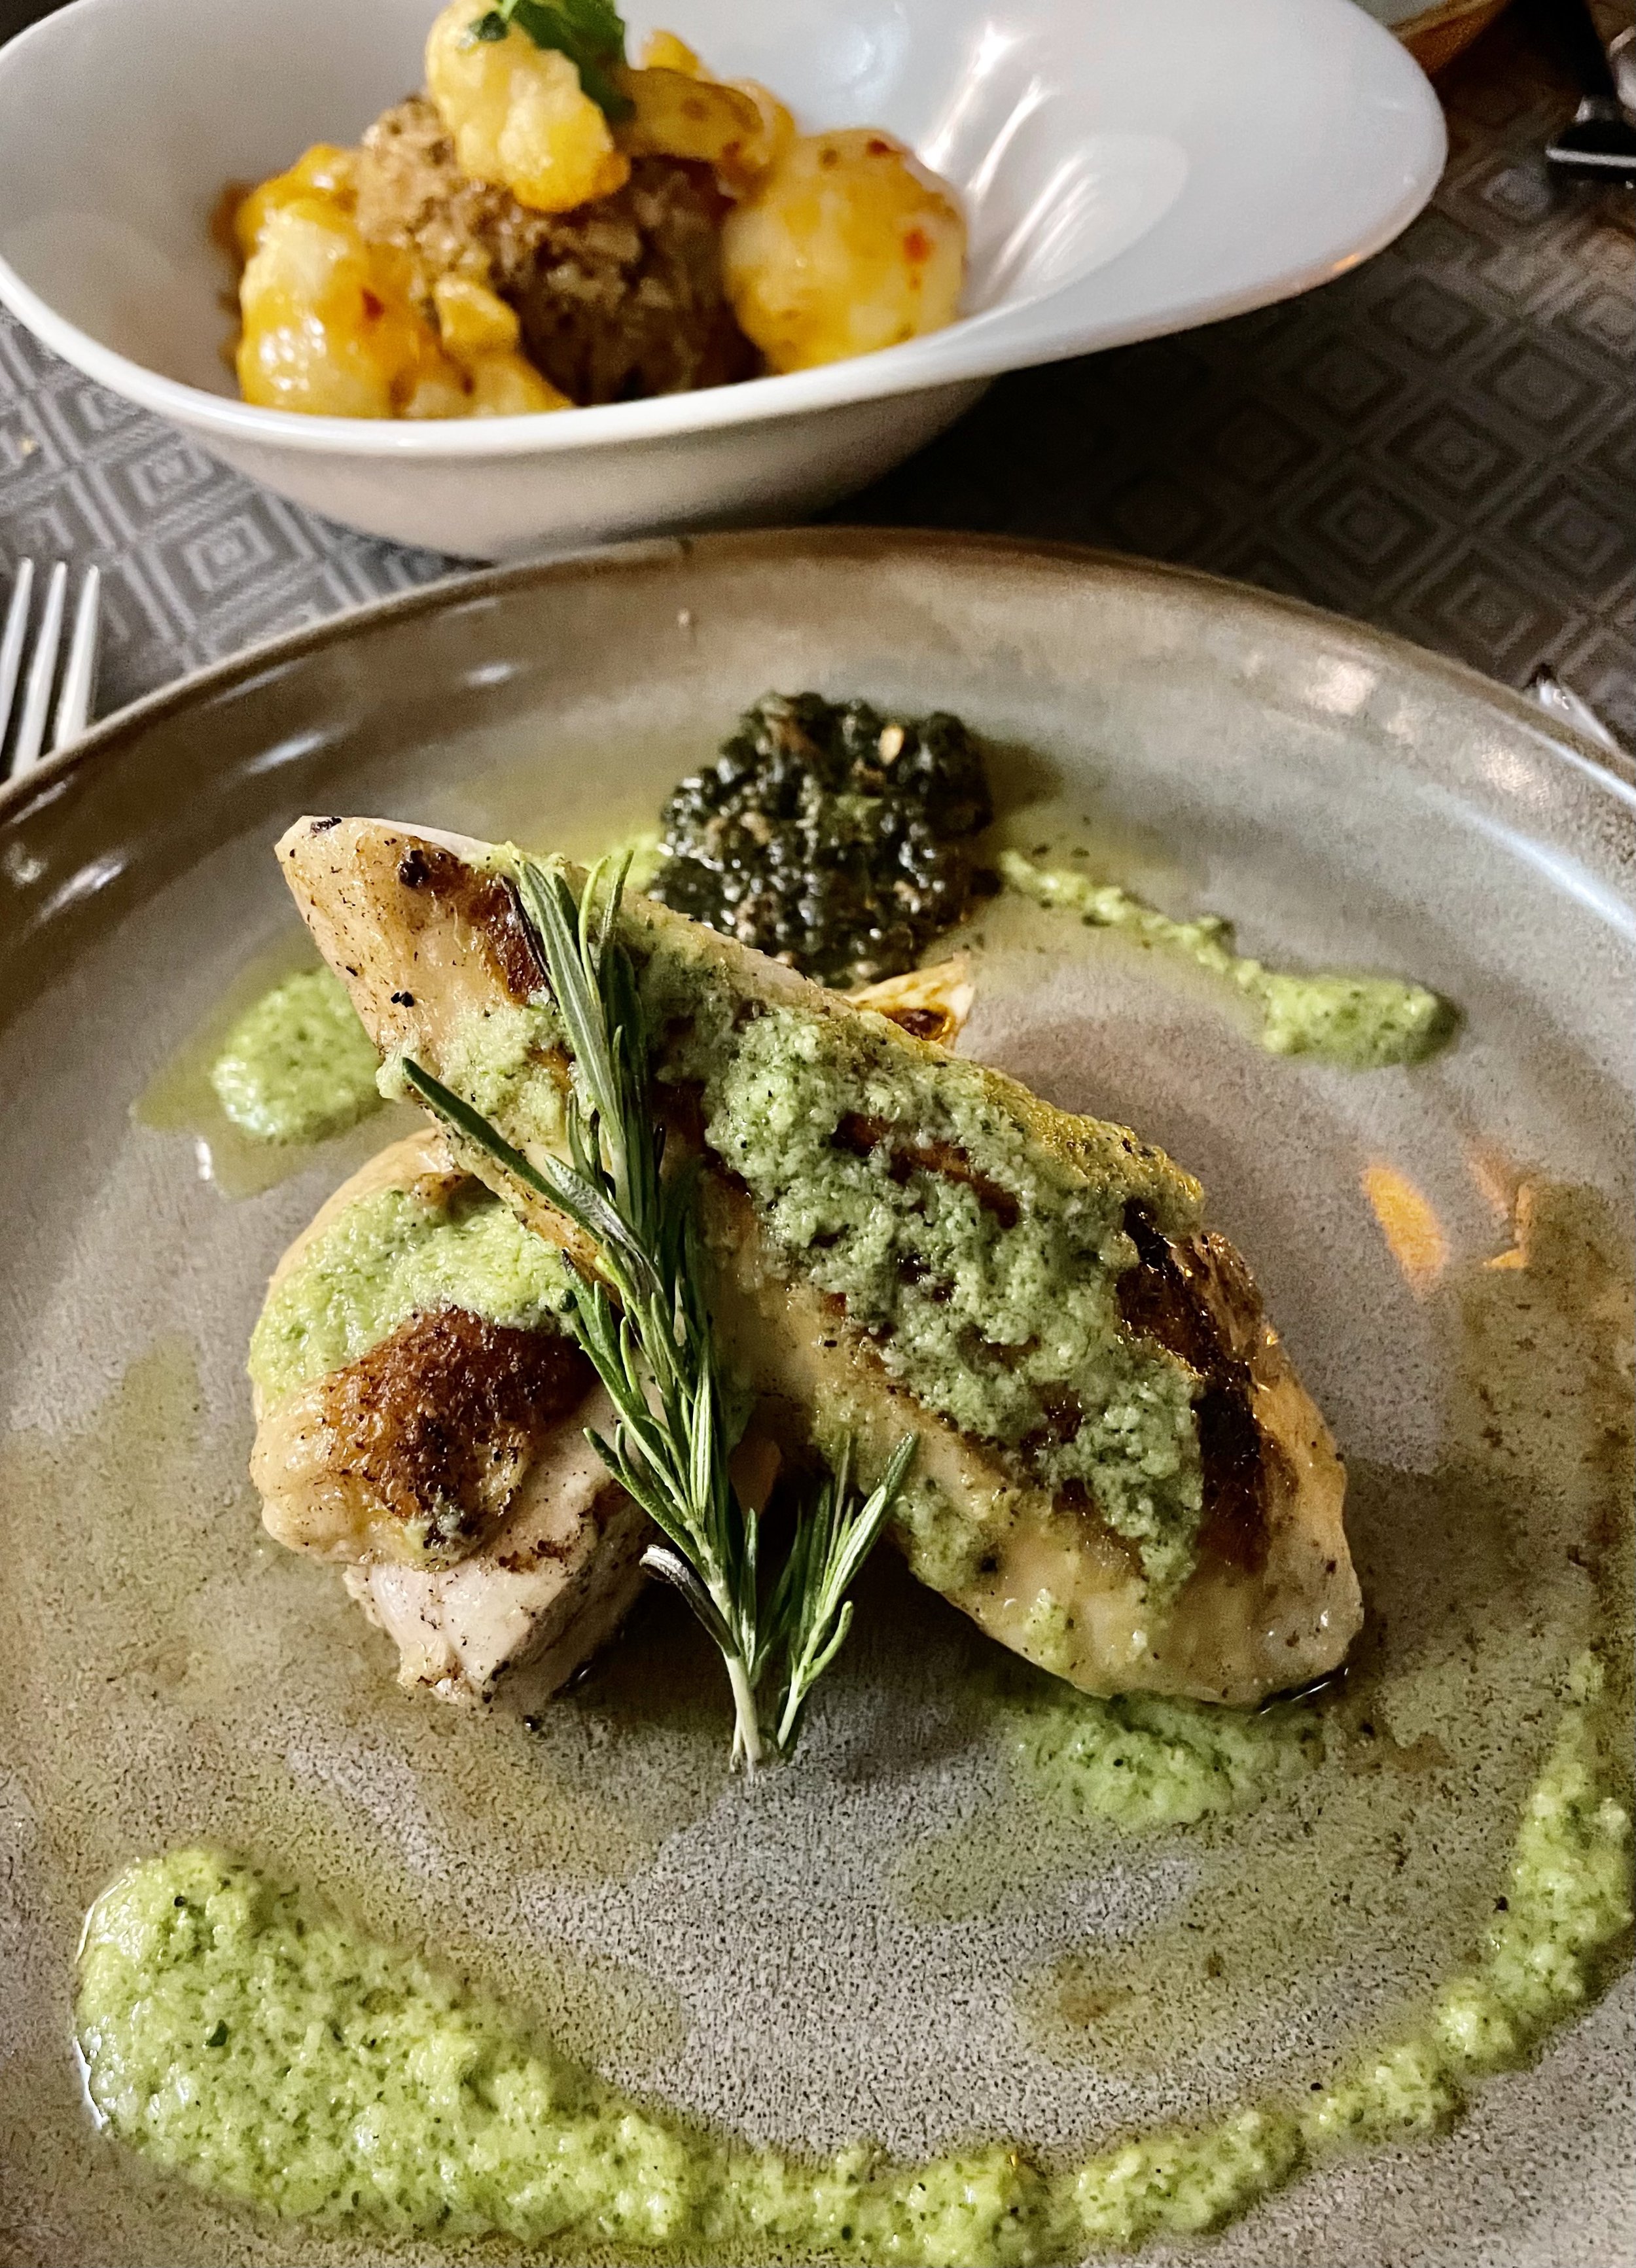  The broccoli pesto-cooked chicken breast  